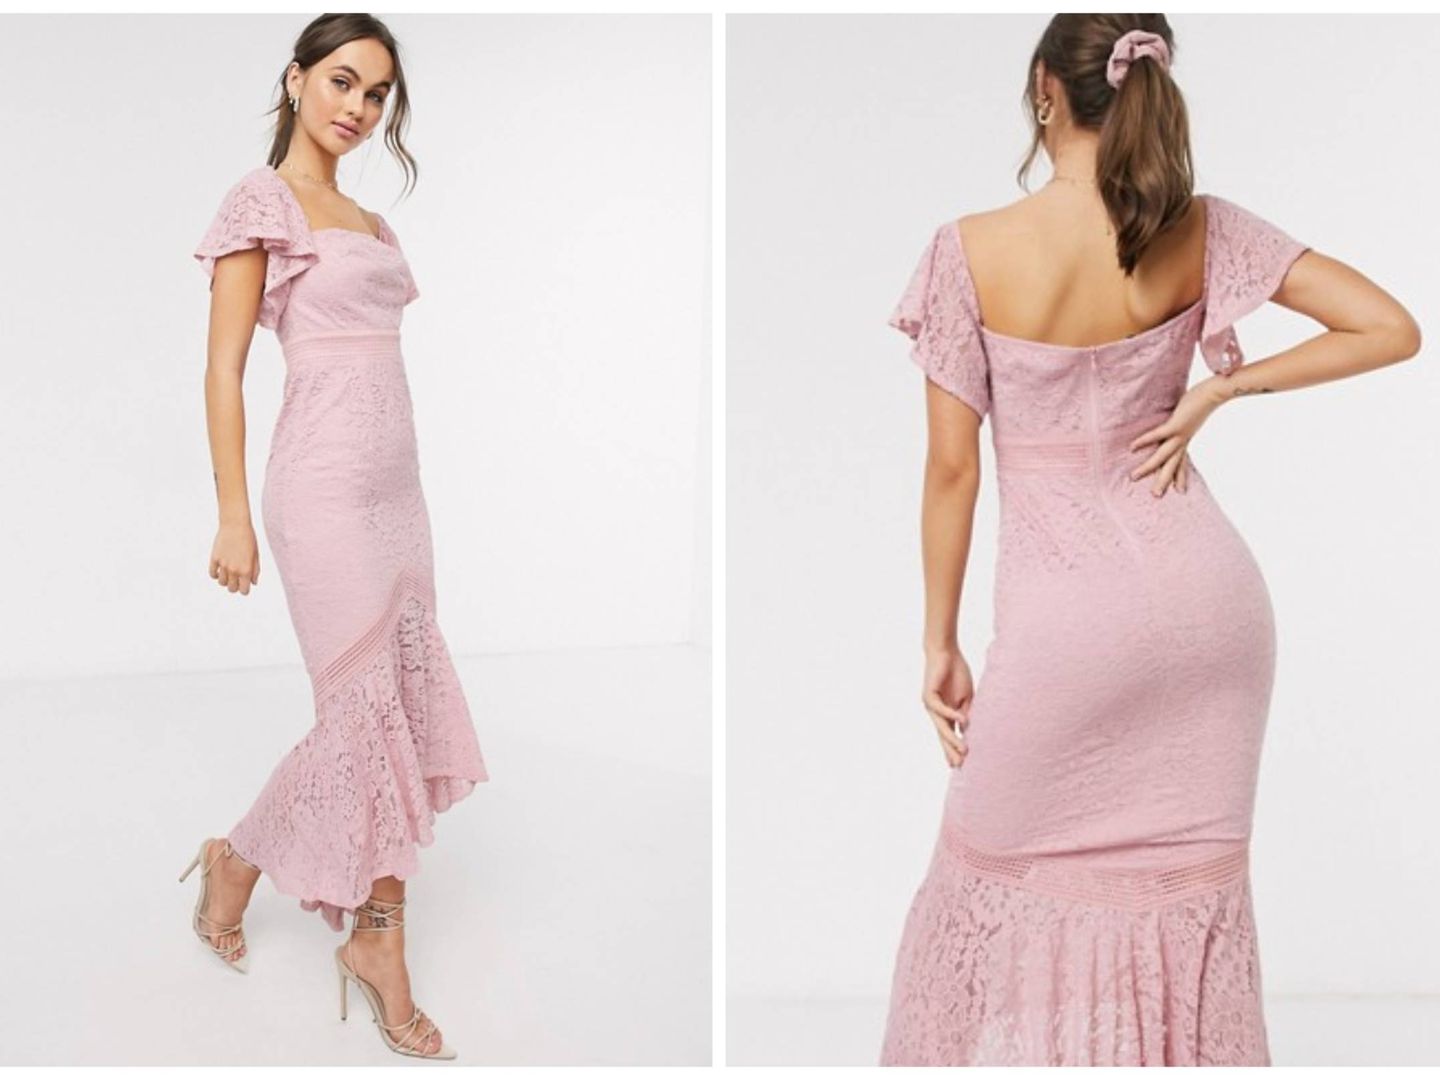 Nuevo vestido rosa de Asos. (Cortesía)